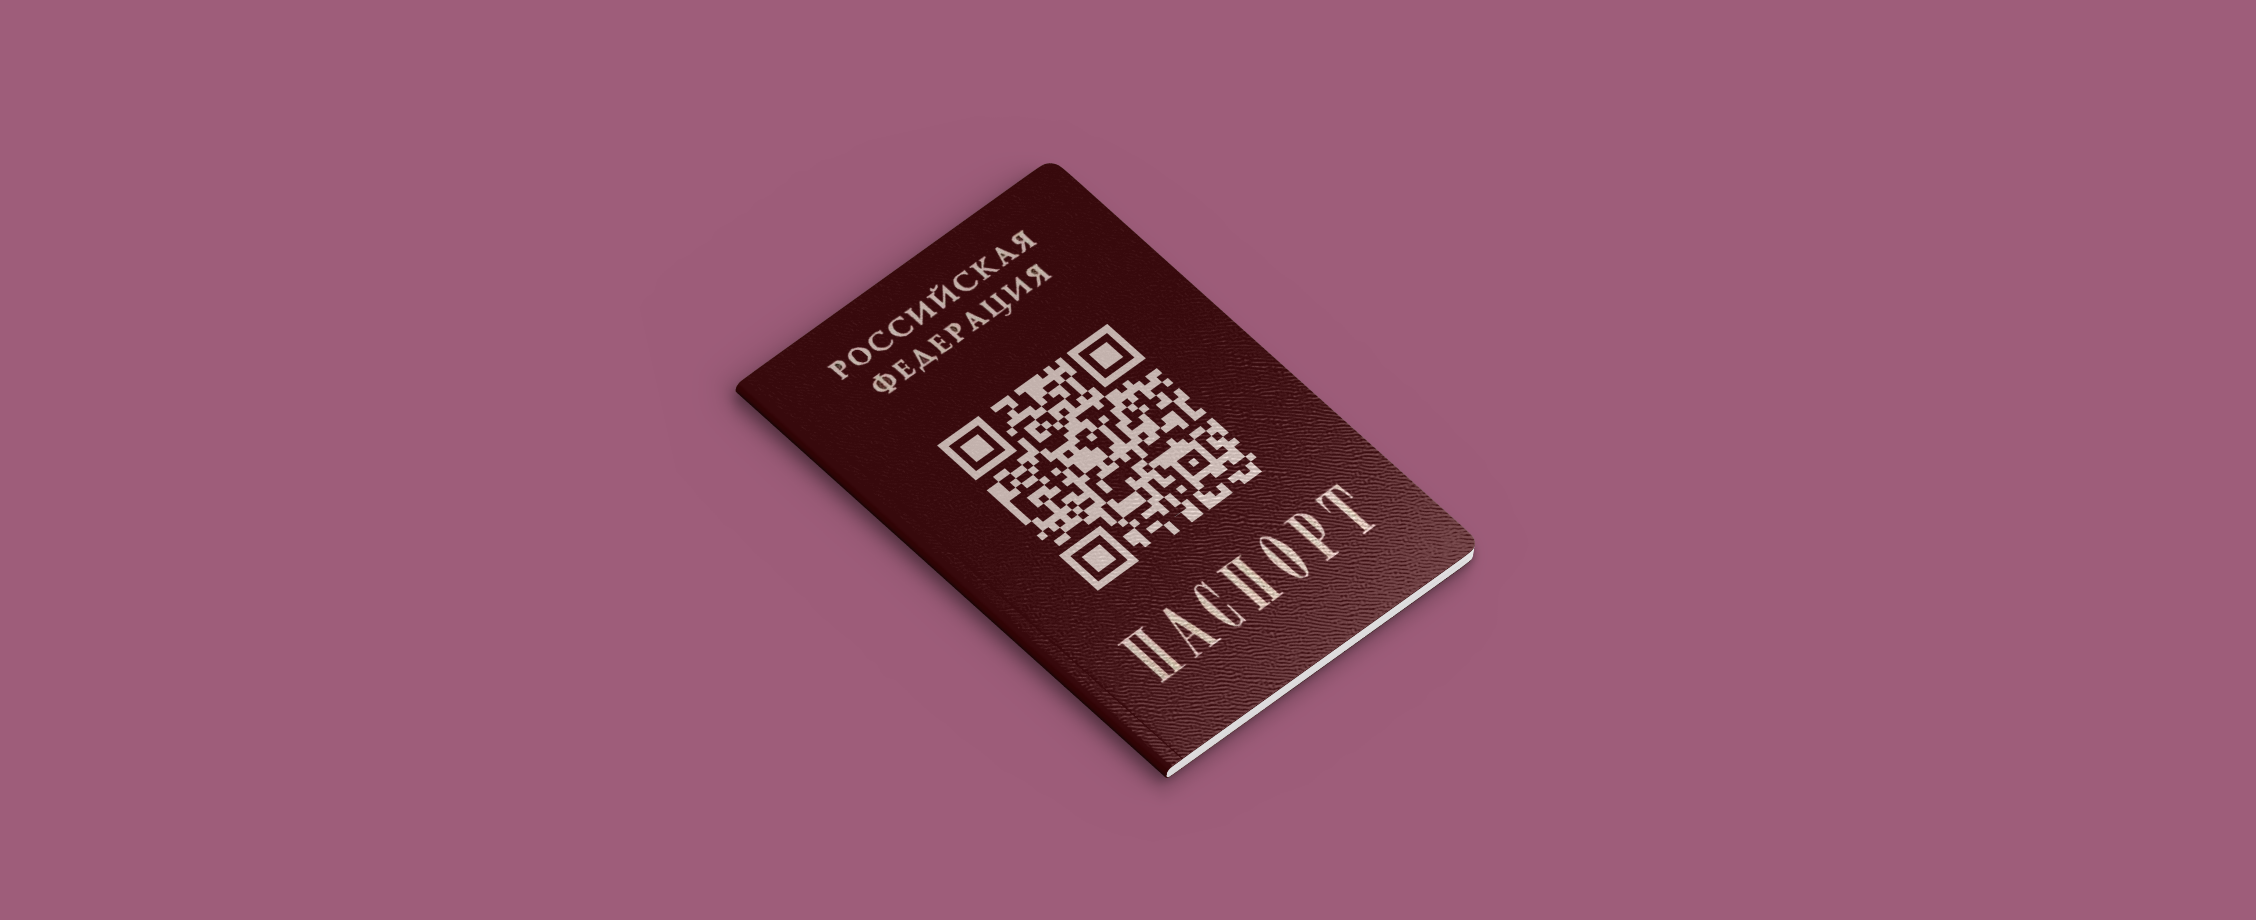 Цифровой паспорт заменил бумажный: как пользоваться — объясняем